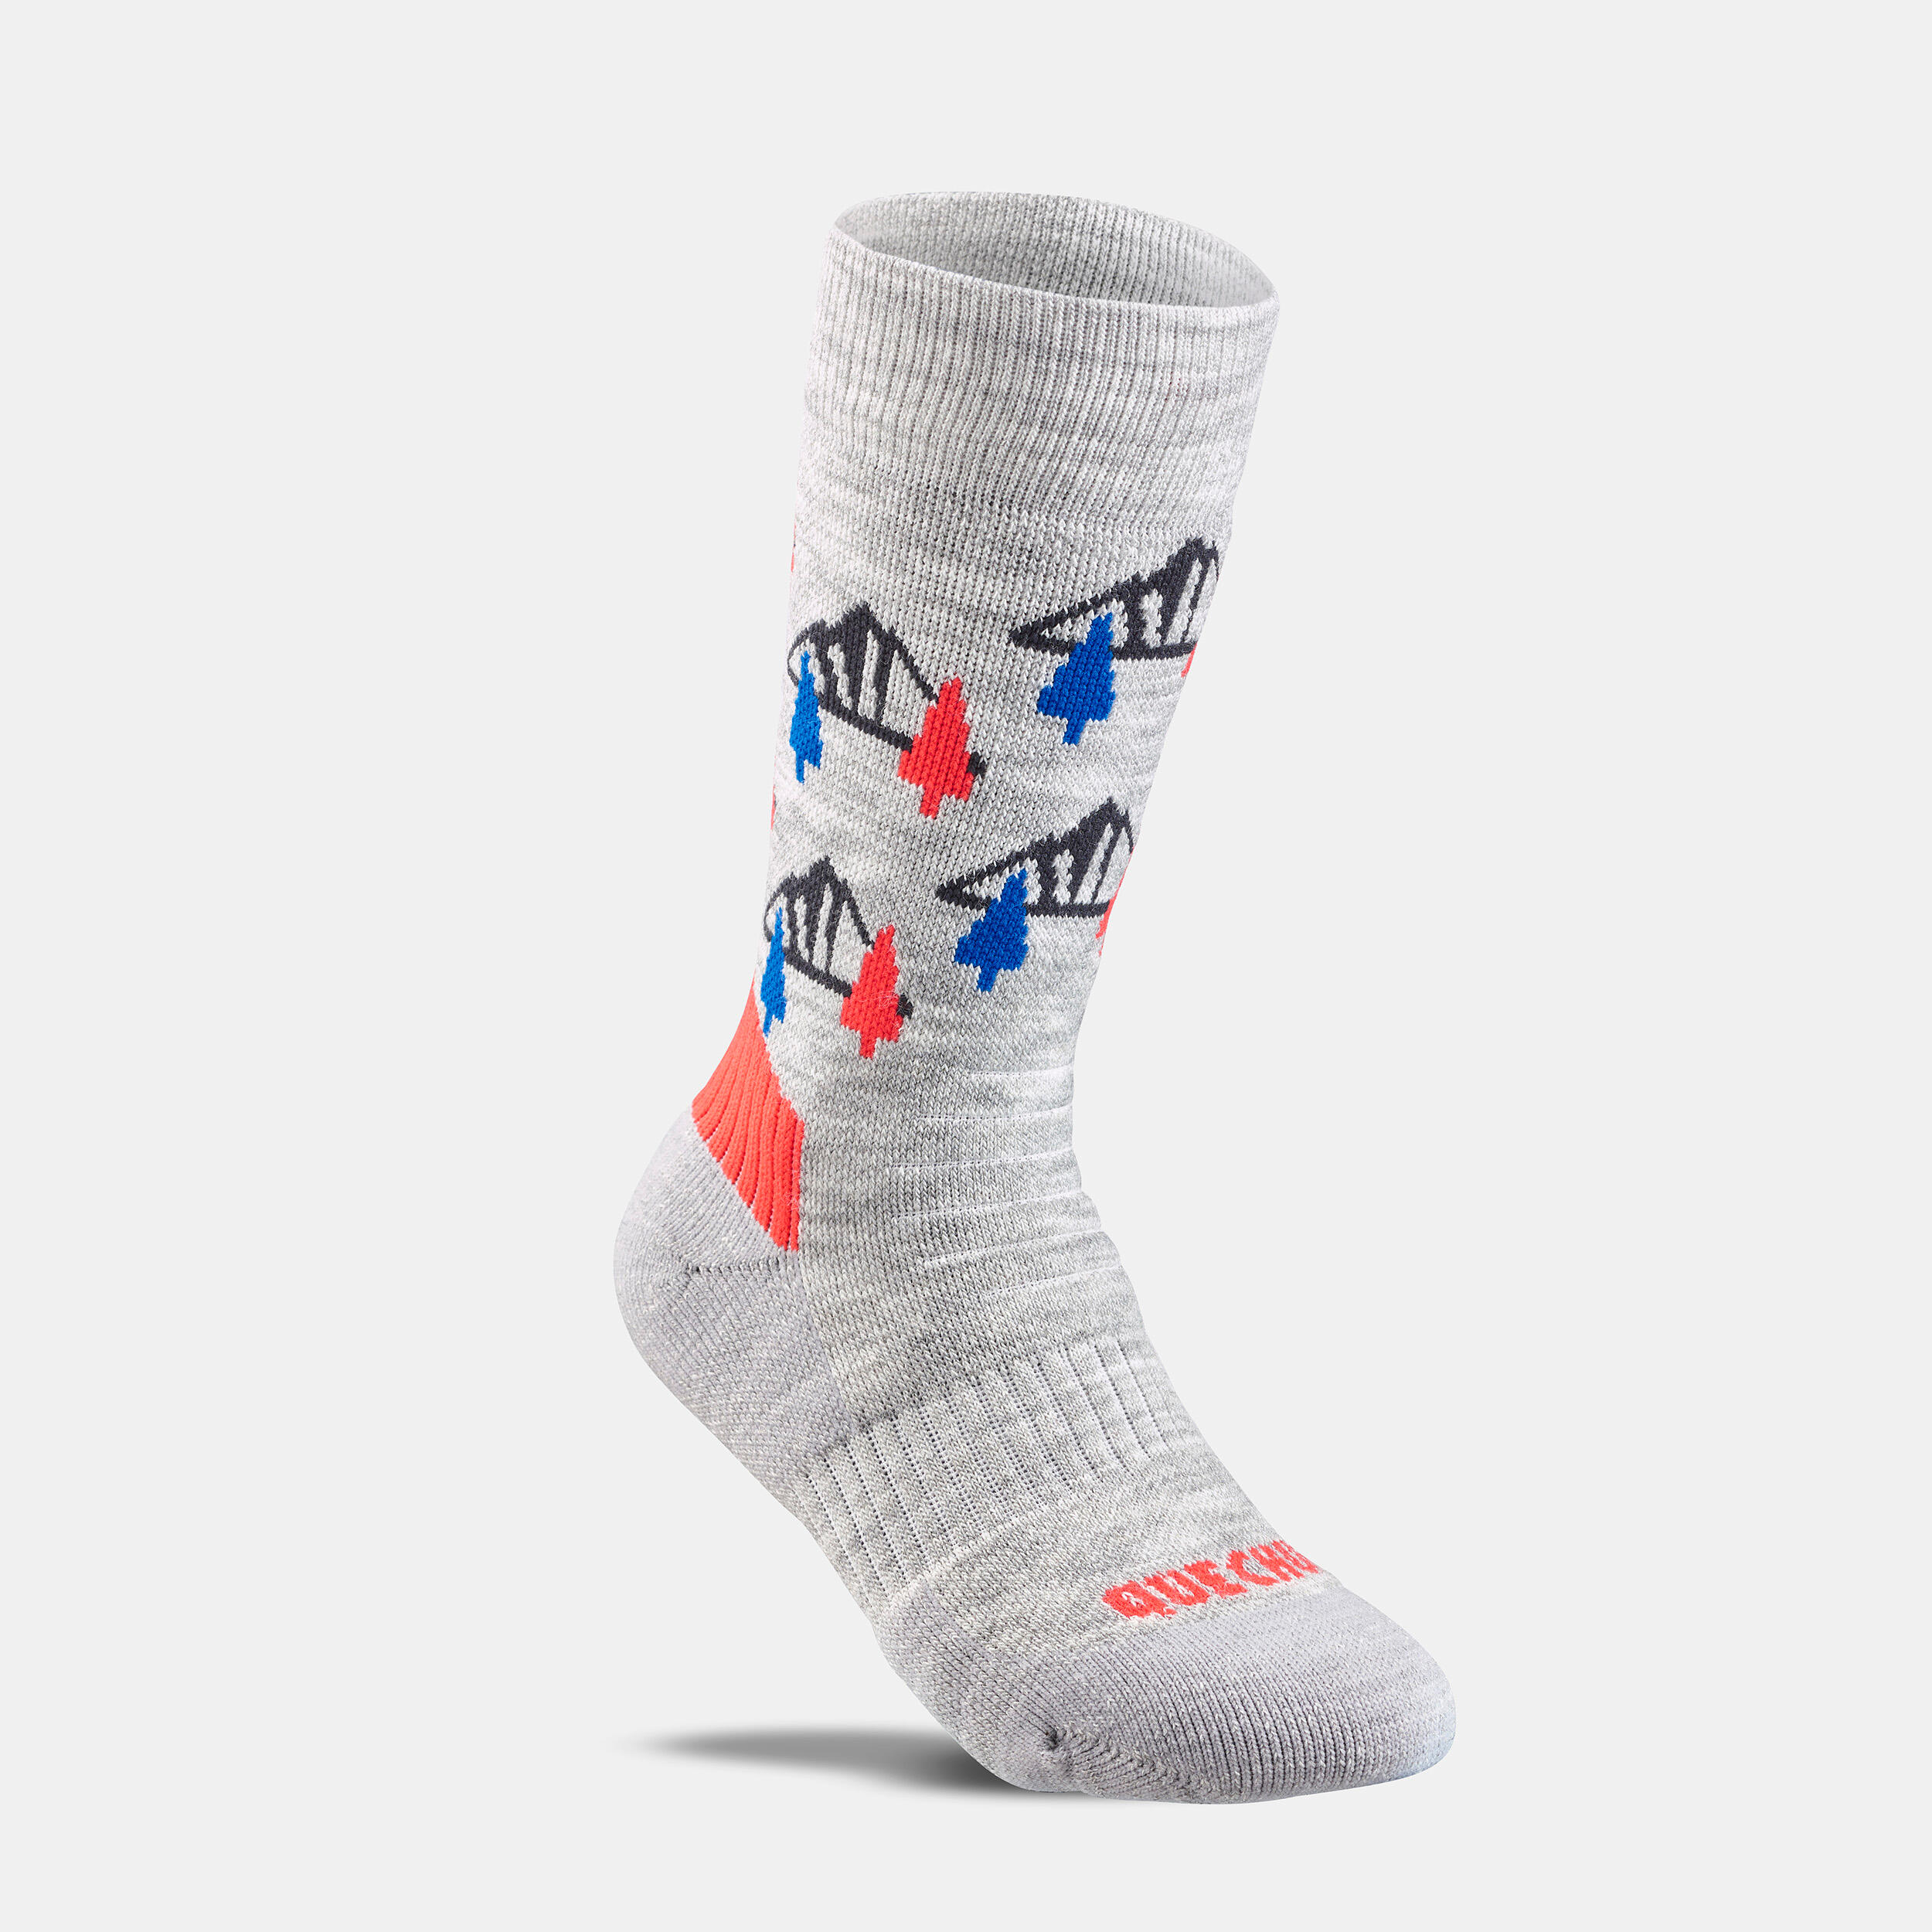 Kids’ Warm Hiking Socks SH100 Mid 2 Pairs 3/9